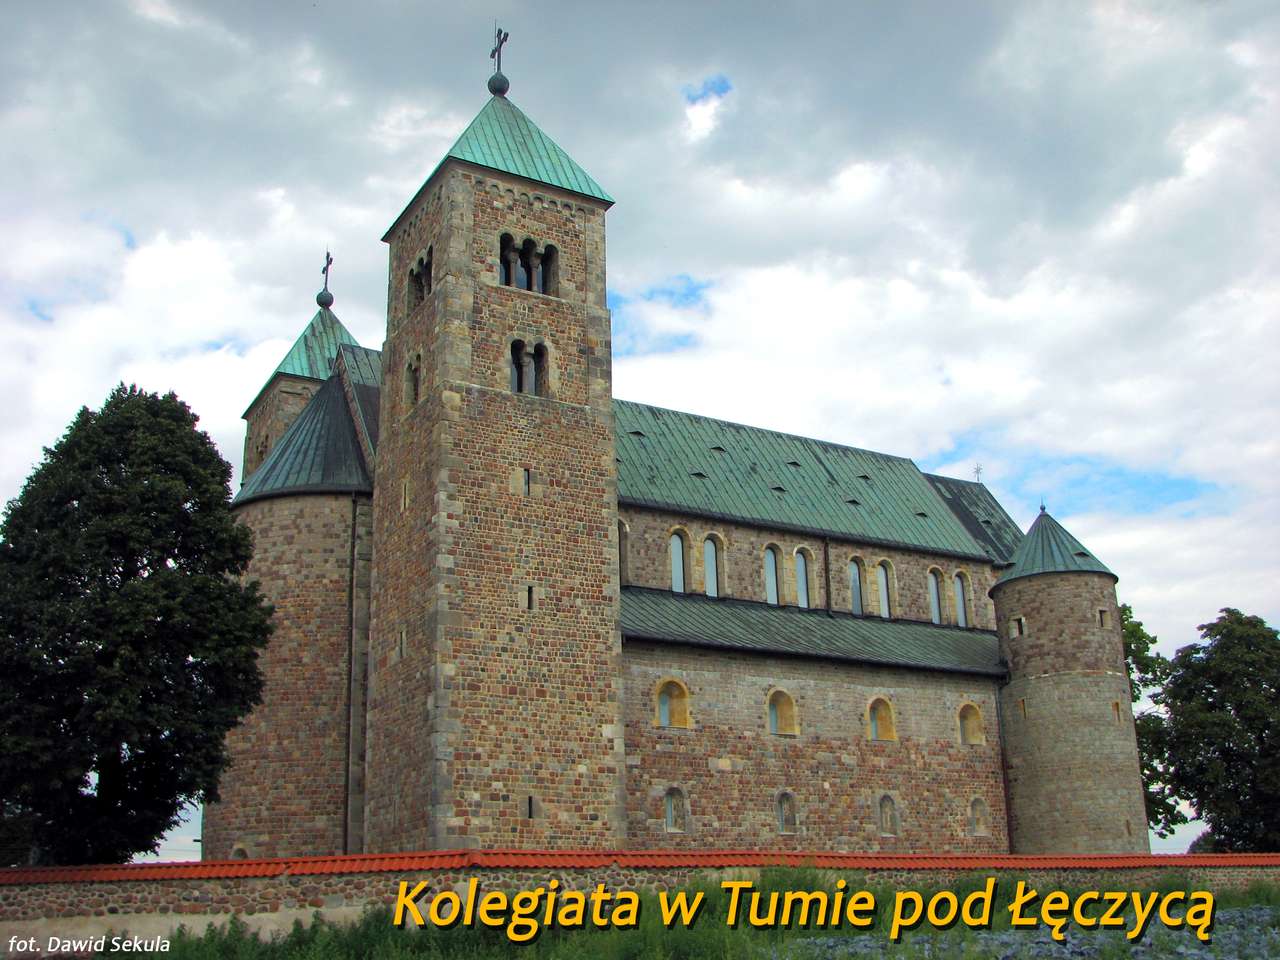 Collegiate Církve v Tumy pod Łęczyca puzzle online z fotografie